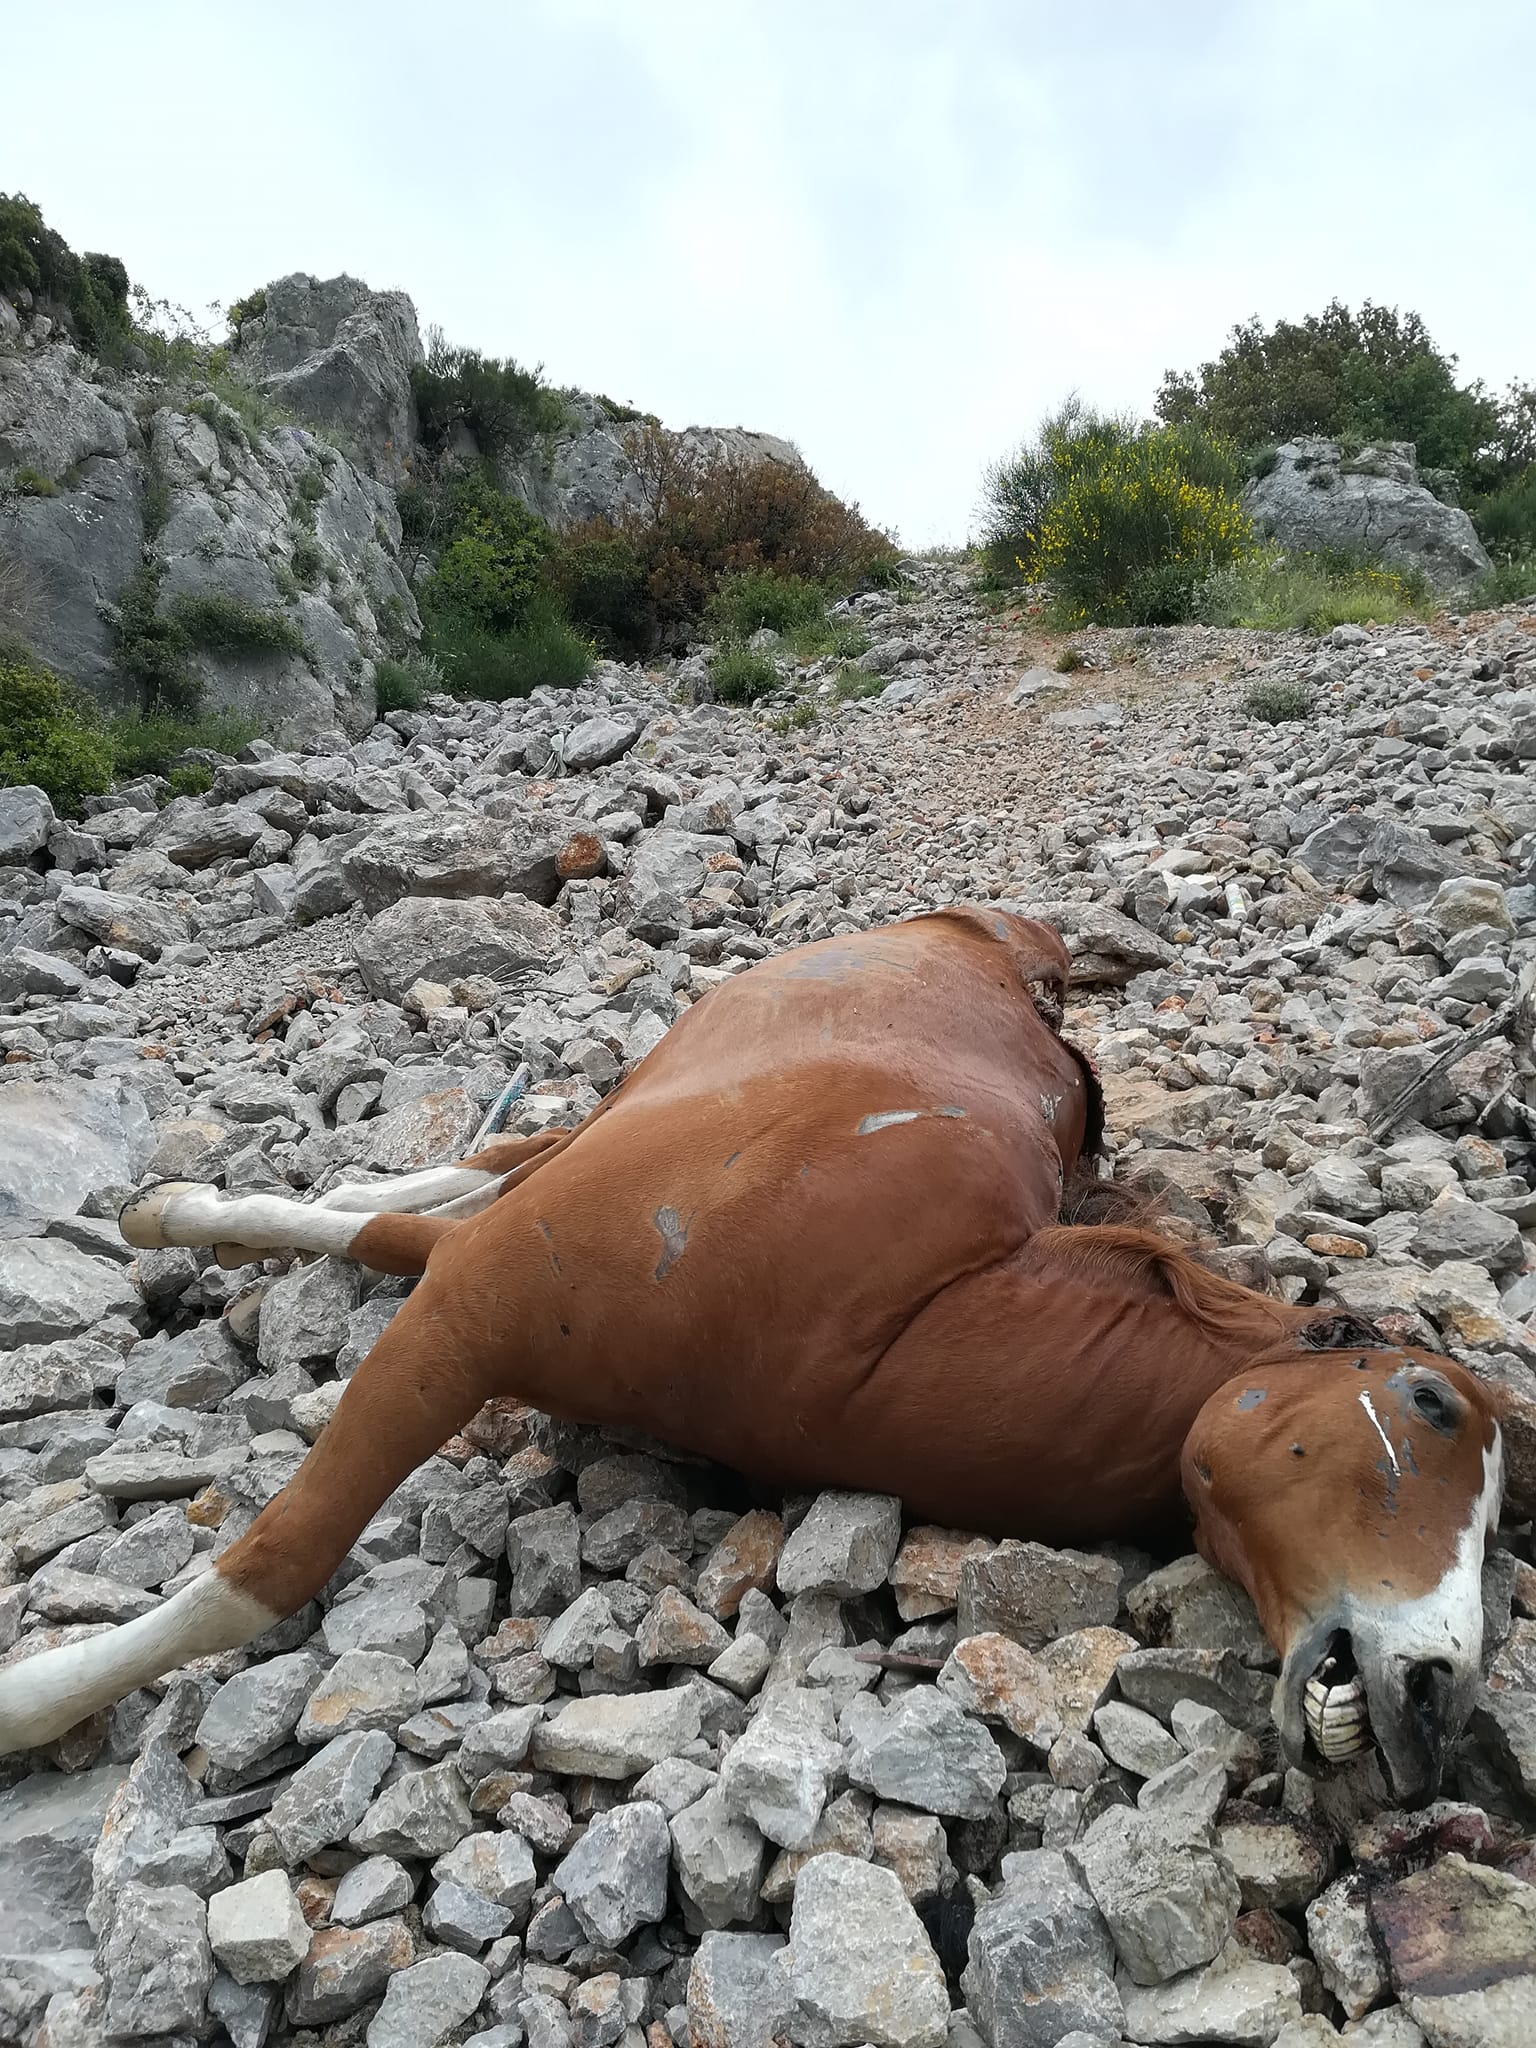 Σε εξέλιξη προανακριτική διαδικασία για τα νεκρά άλογα στην Πάρνηθα.  Καταγγελίες και για άλλα περιστατικά